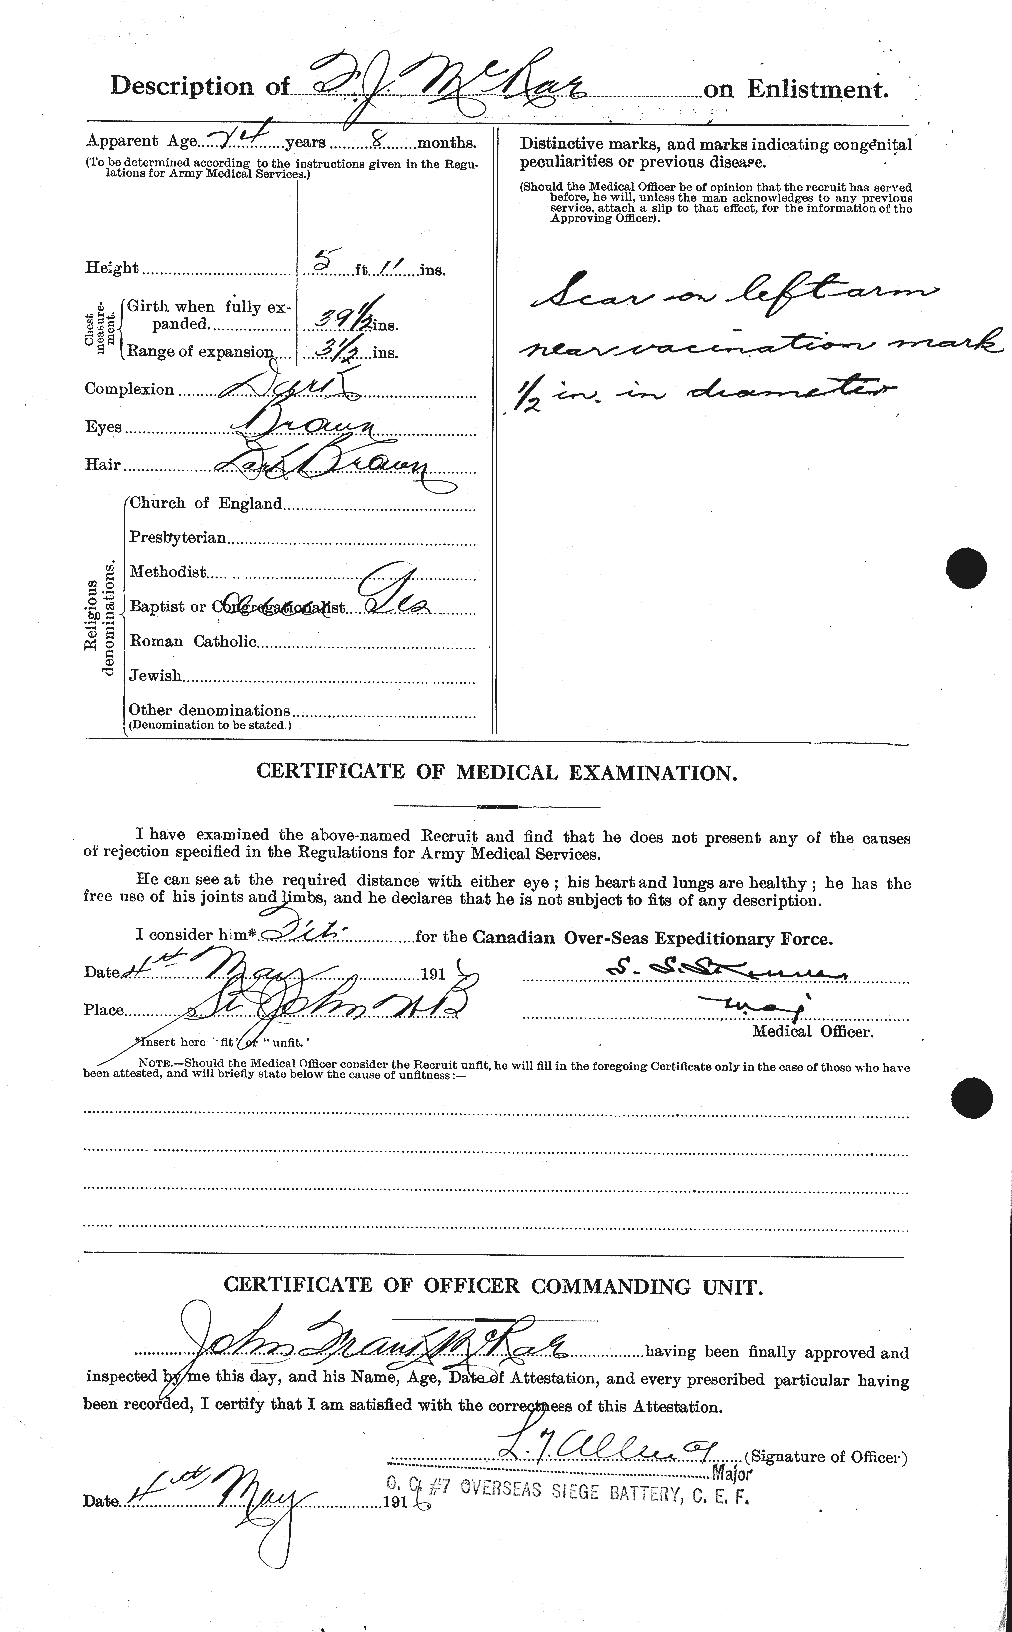 Dossiers du Personnel de la Première Guerre mondiale - CEC 542839b